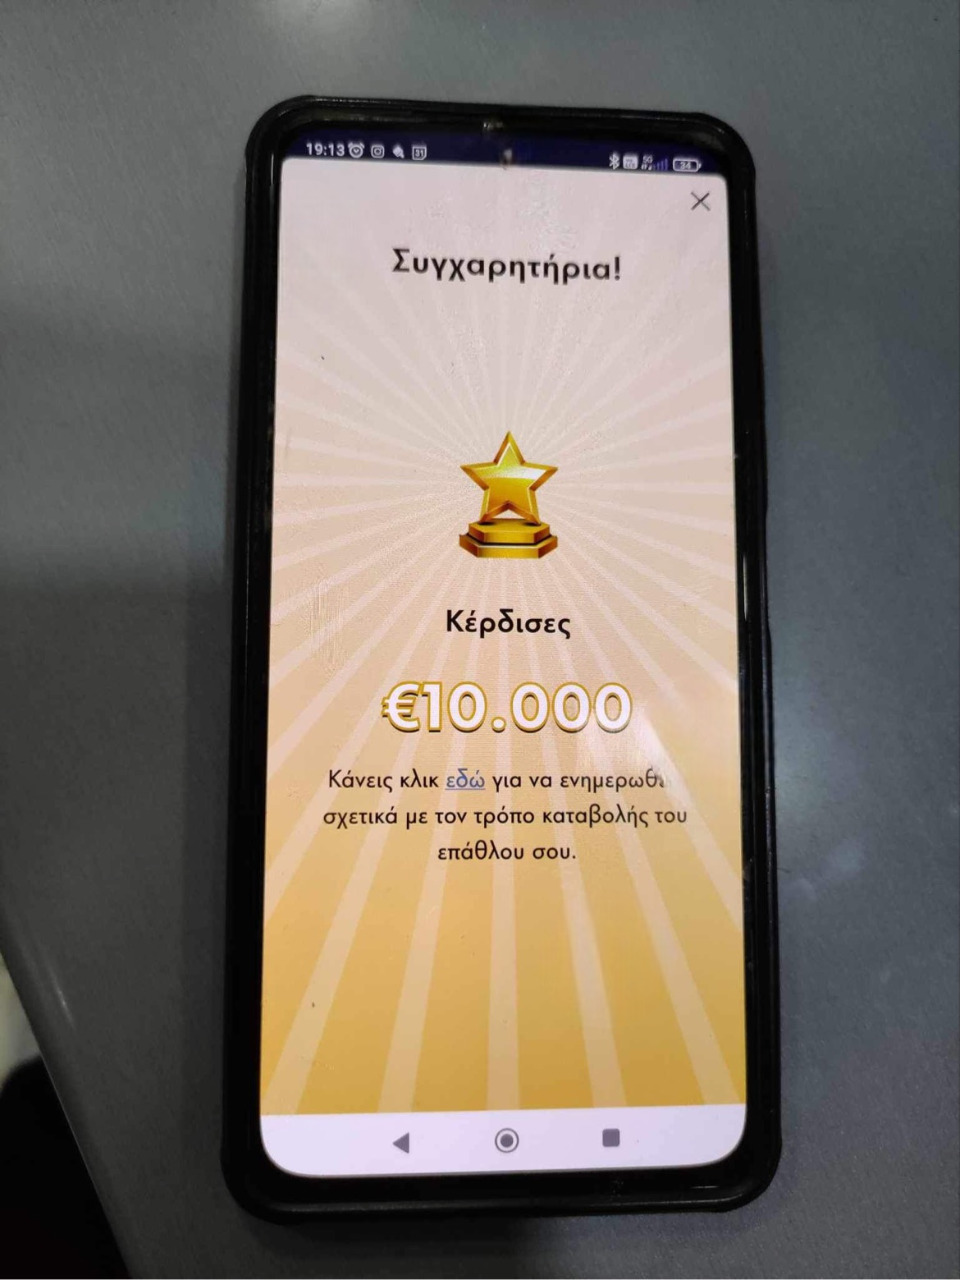  Το μήνυμα που εμφανίστηκε στην οθόνη του κινητού τηλεφώνου του τυχερού που κέρδισε 10.000 ευρώ στο FreeWin 